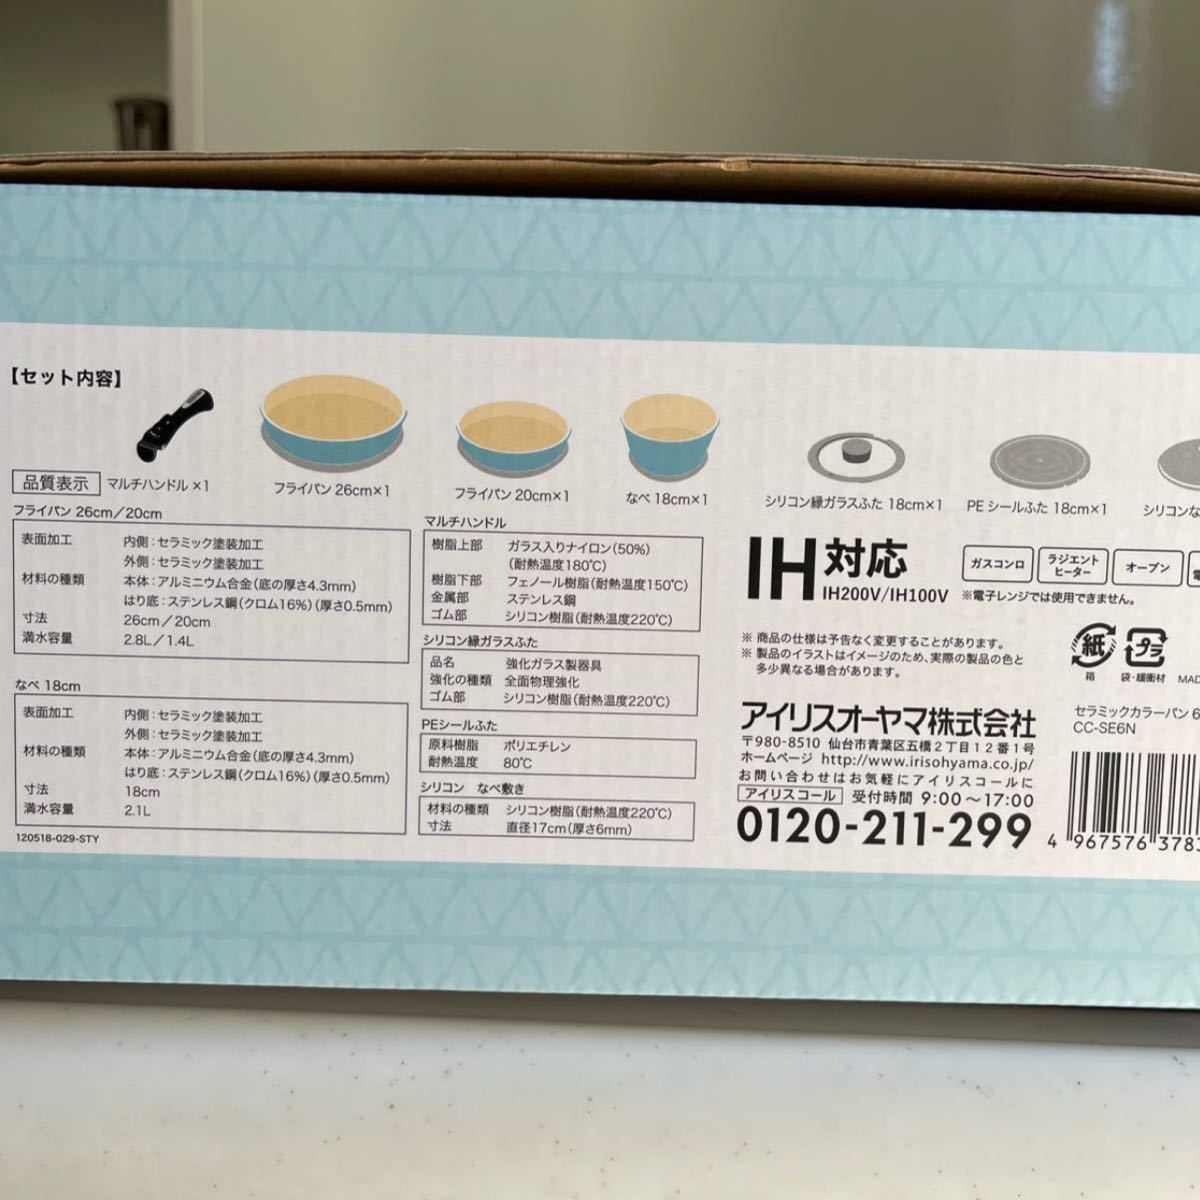 未使用　アイリスオーヤマ　キッチンシェフ　セラミック　カラーパン 6点セット+シリコンなべ敷き付　ブルー　　